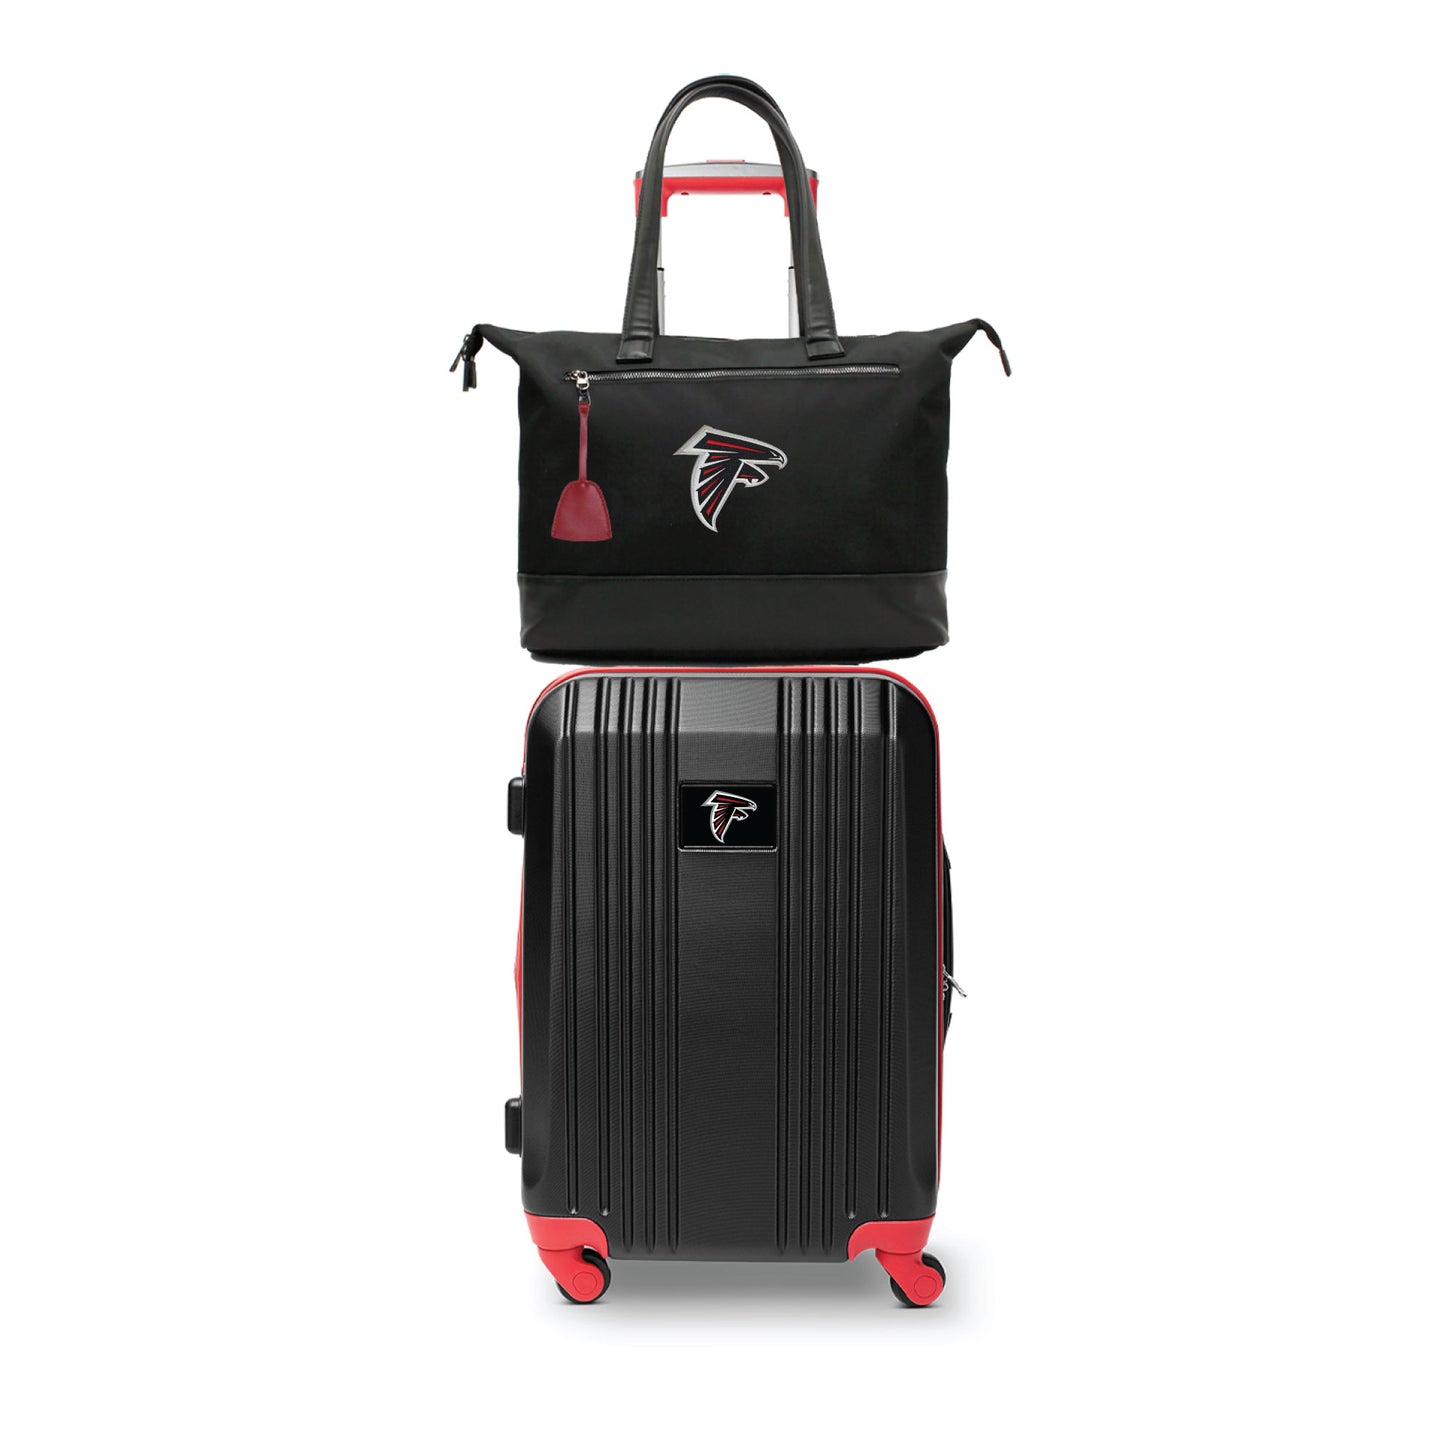 Atlanta Falcons Premium Laptop Tote Bag and Luggage Set